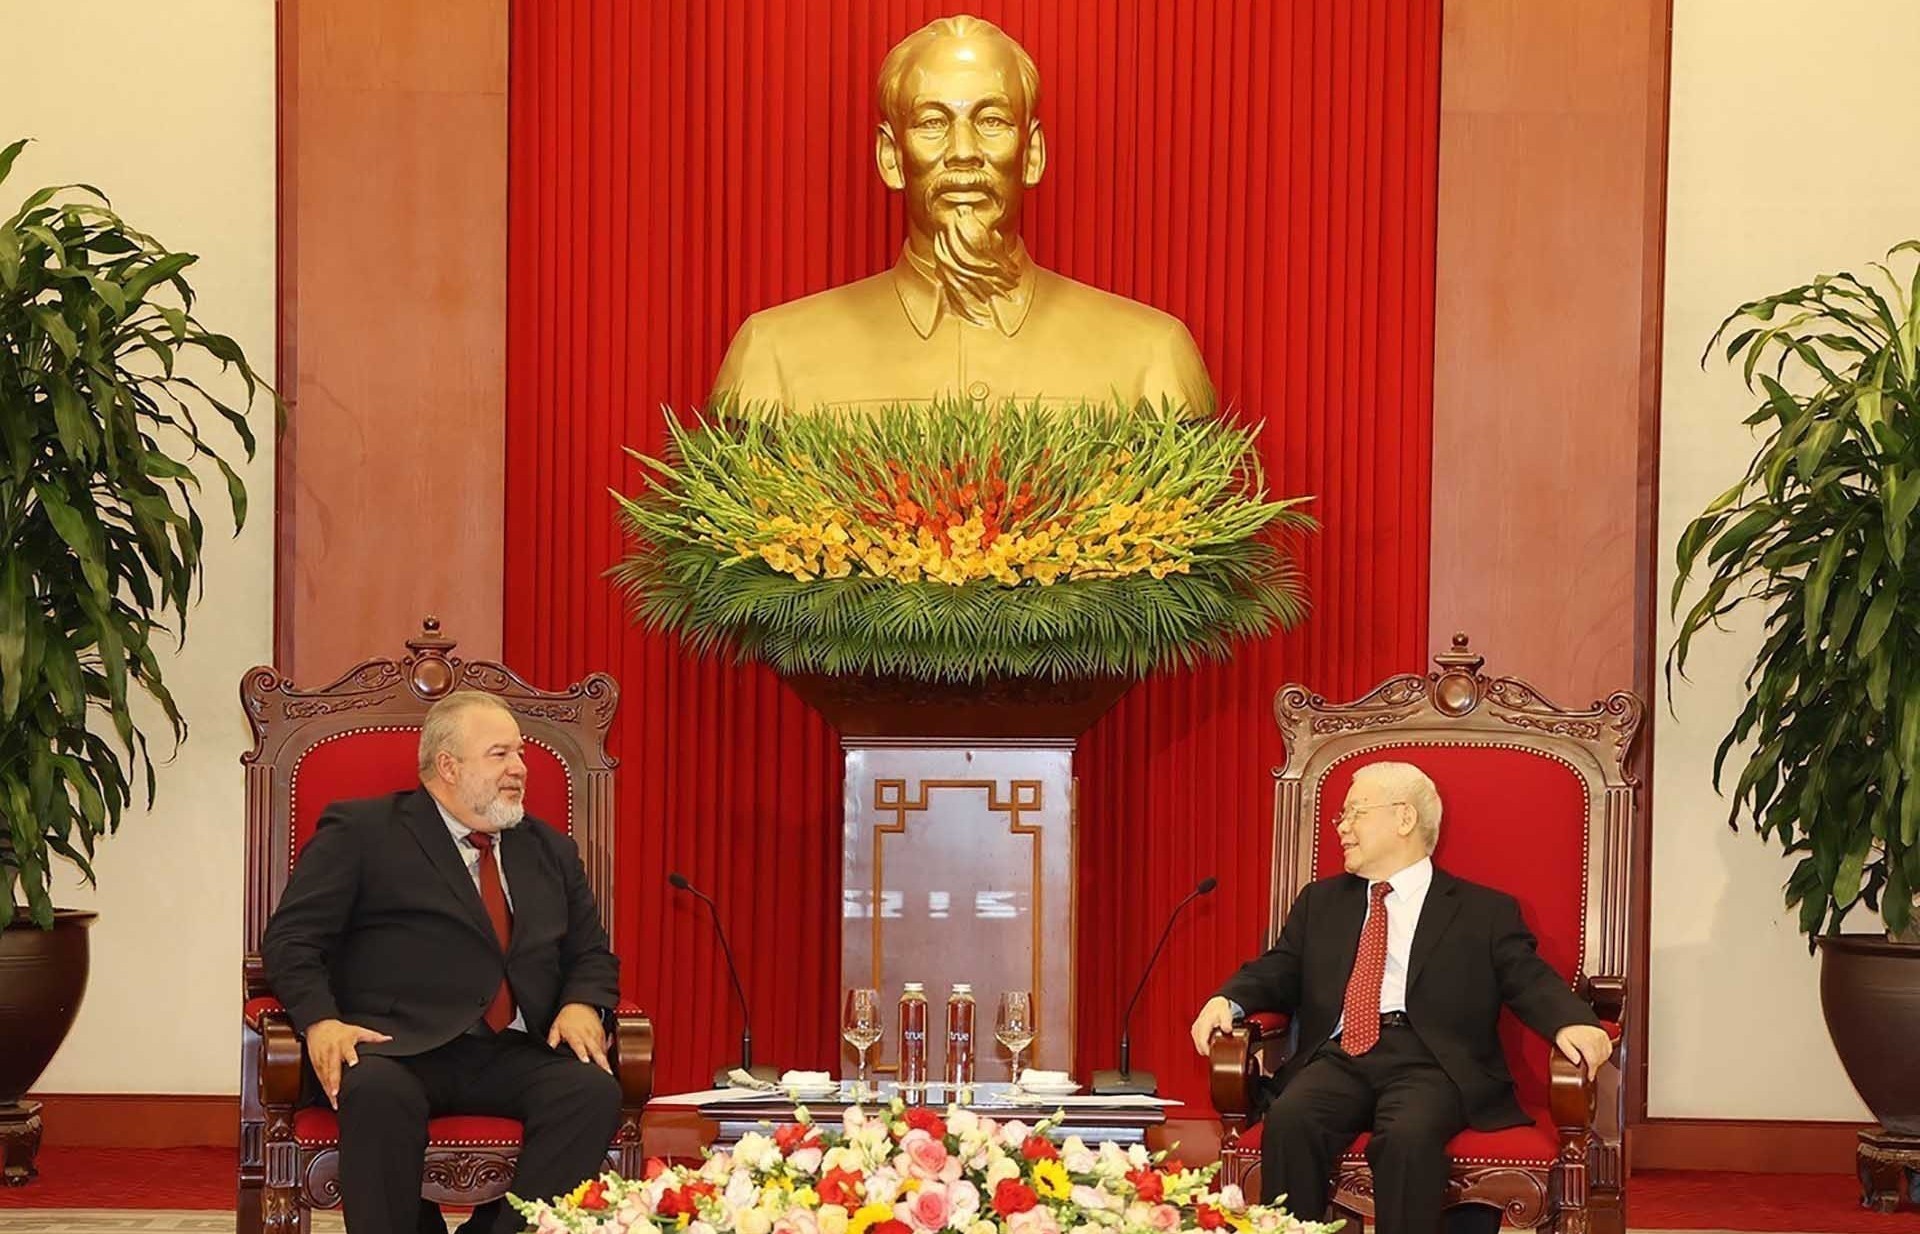 Tổng Bí thư Nguyễn Phú Trọng tiếp Thủ tướng Cuba Manuel Marrero Cruz